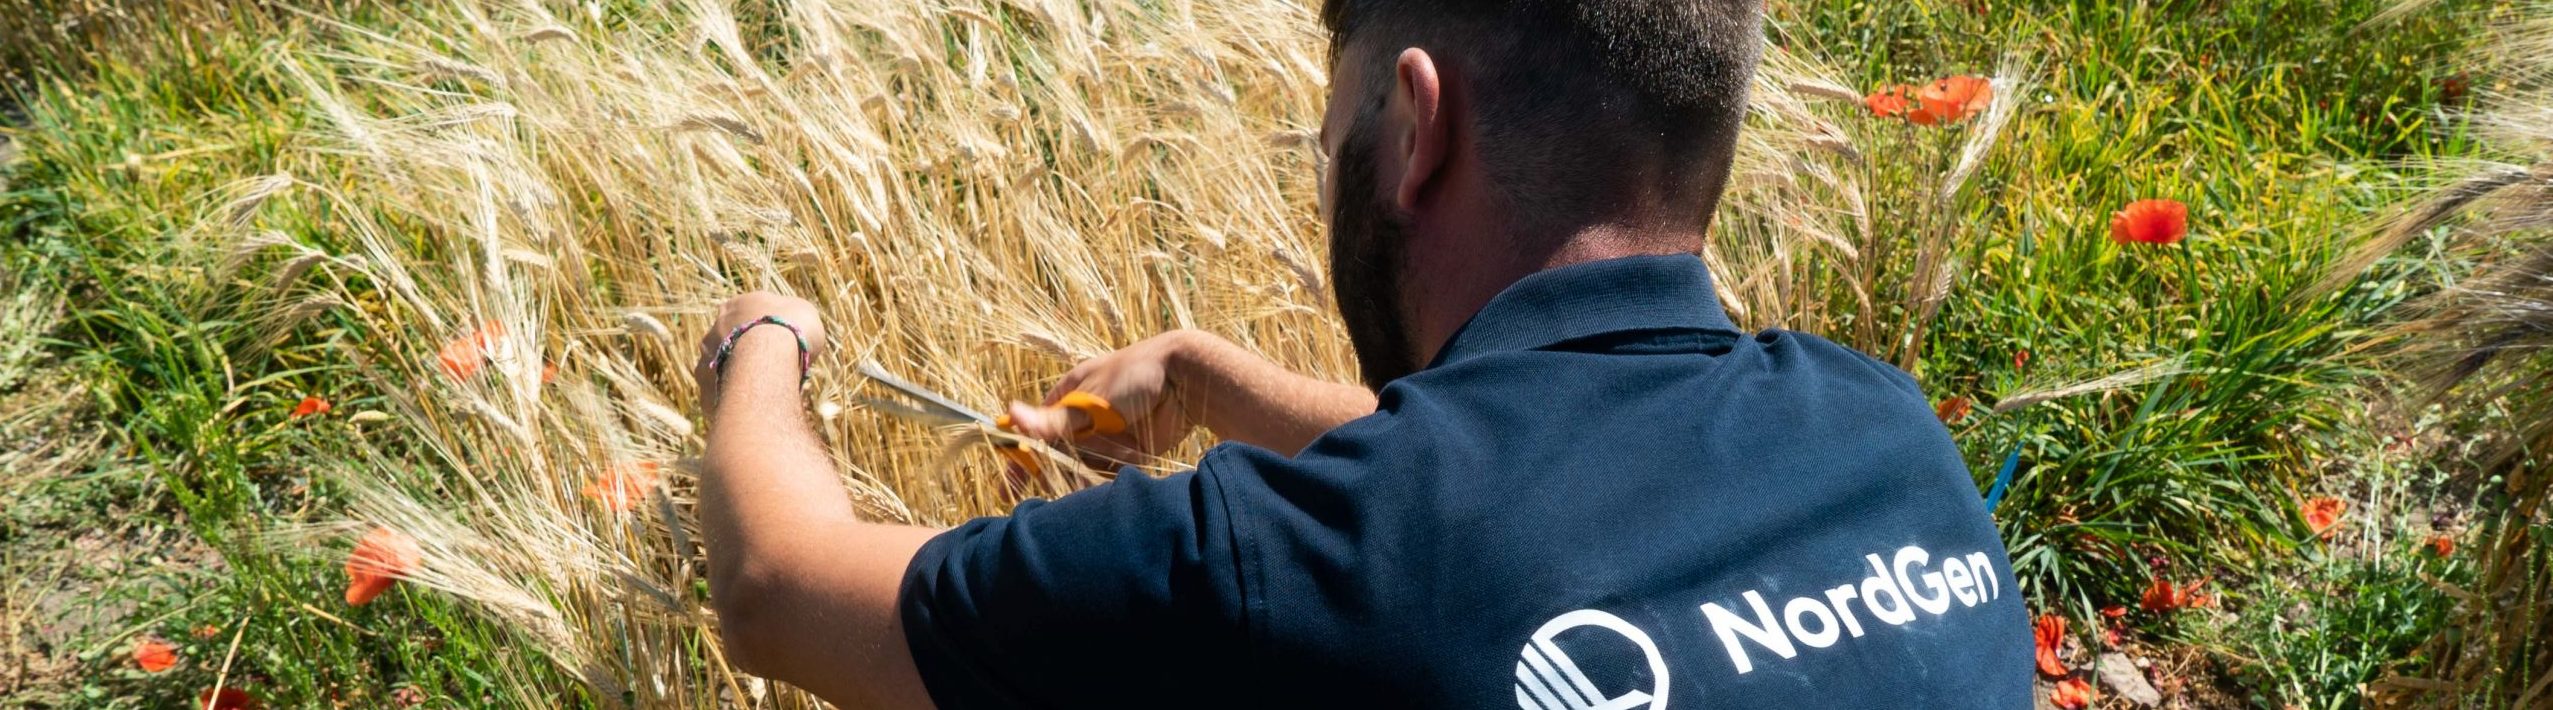 Medarbetare på NordGen klipper korn med sax på ett fält.